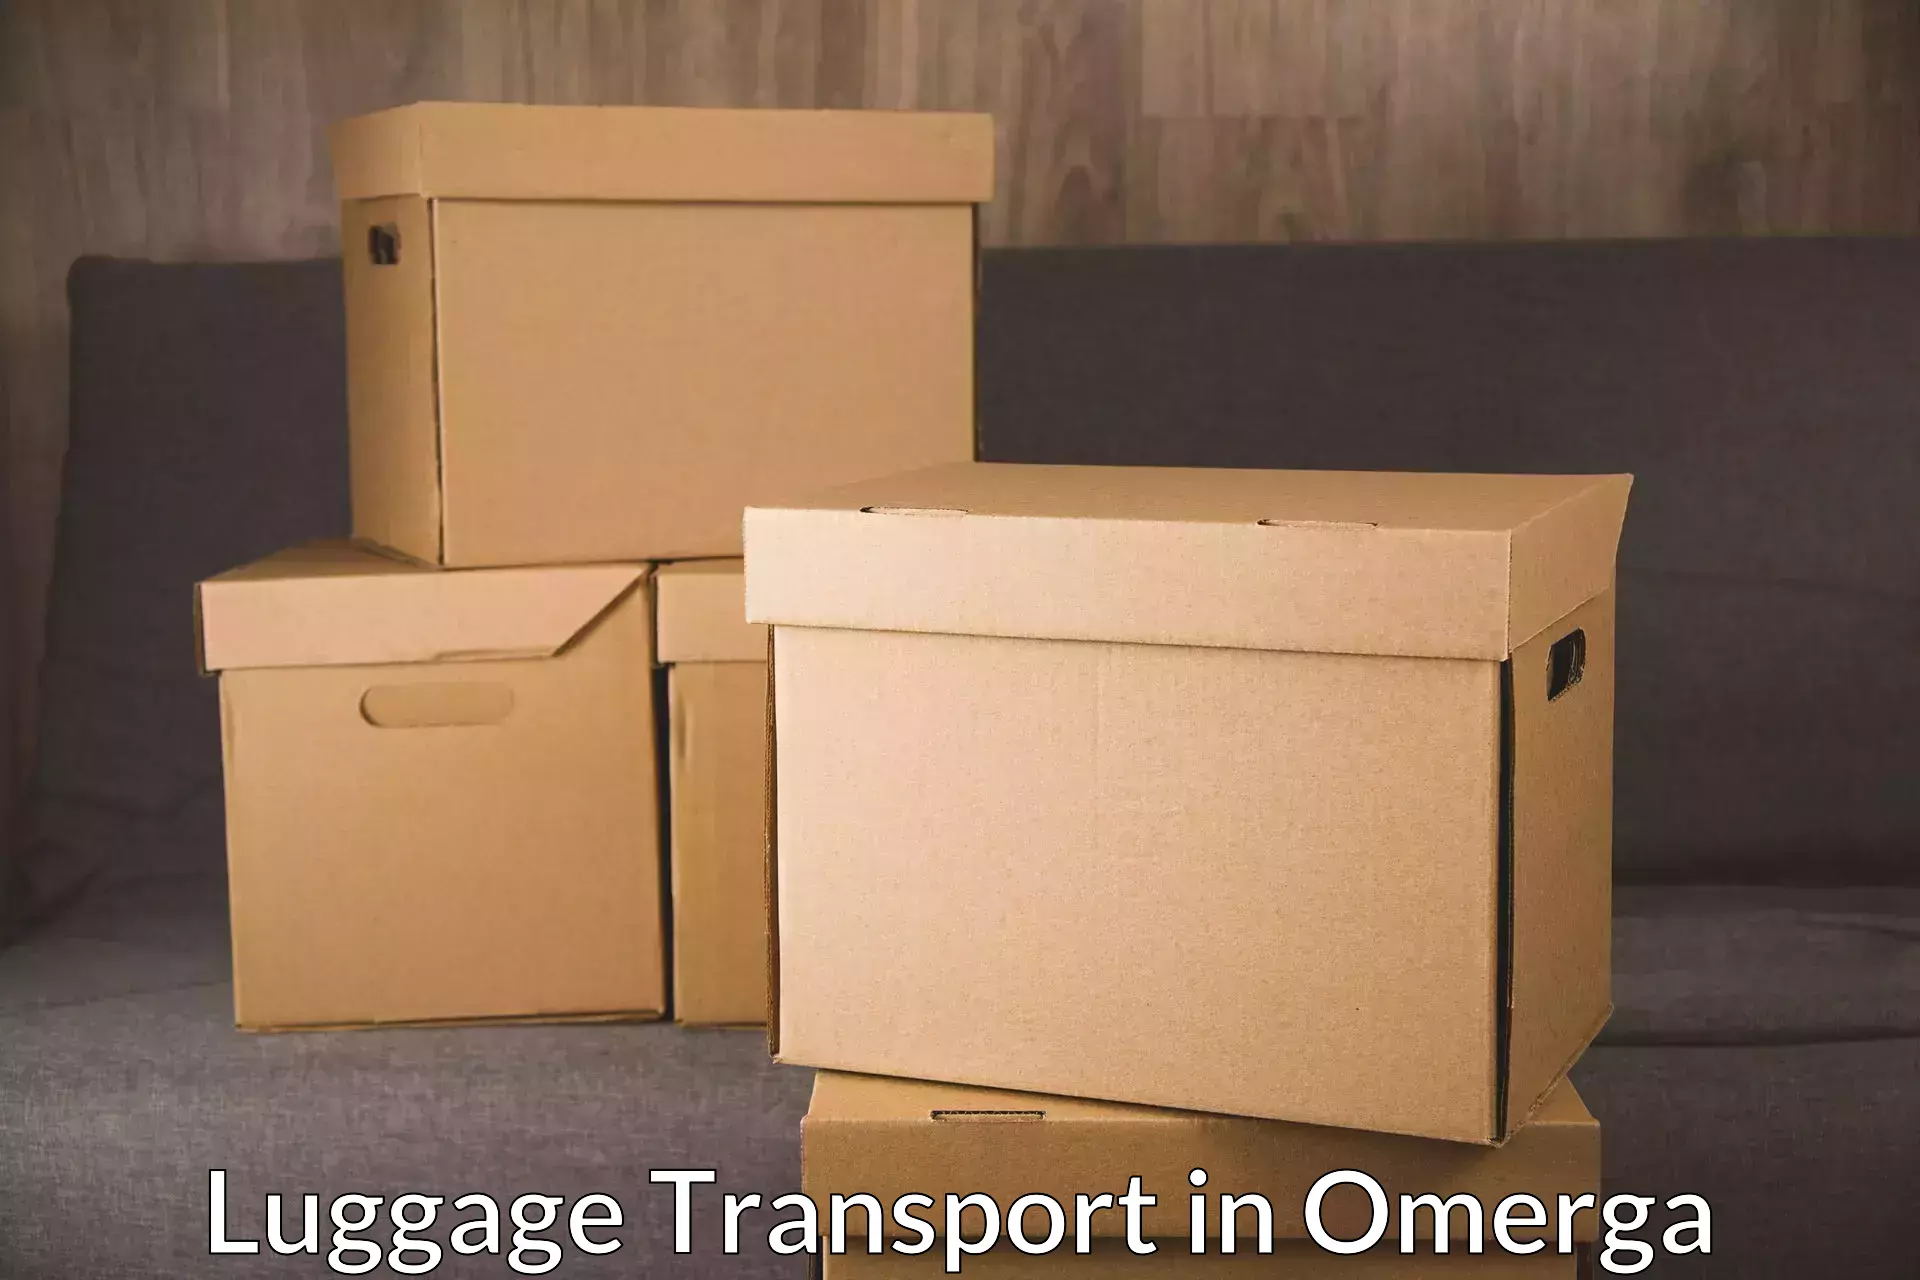 Urban luggage shipping in Omerga